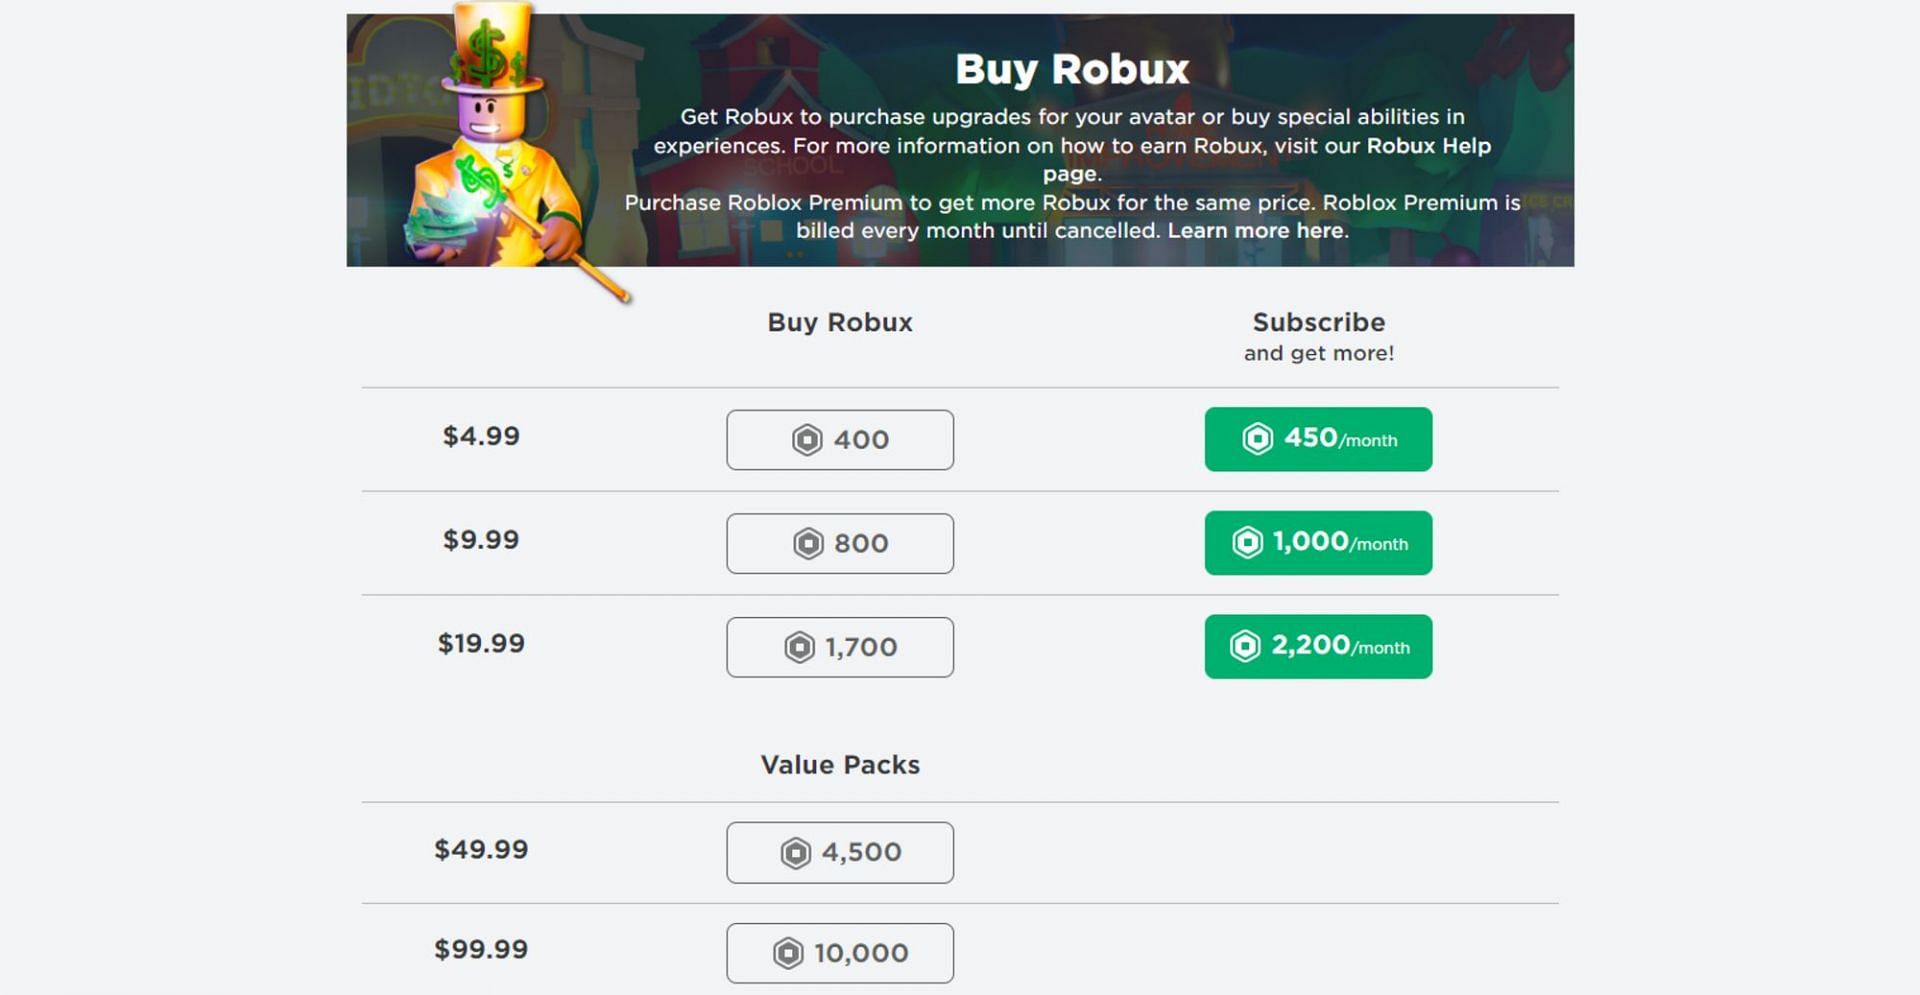 Buy Robux (Image via Roblox)